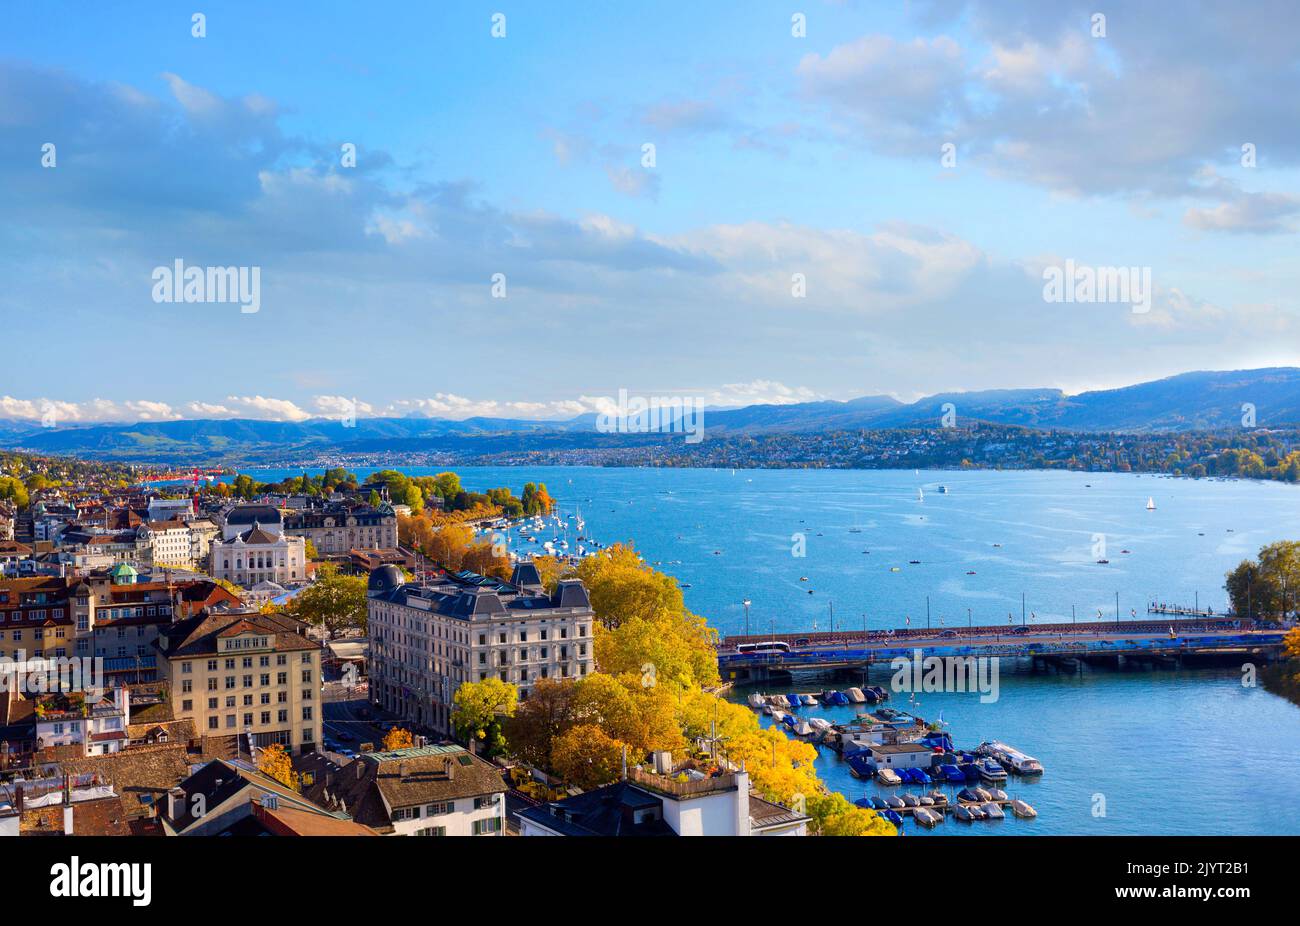 Vue panoramique sur la ville de Zurich et le lac de Zurich, Suisse Banque D'Images